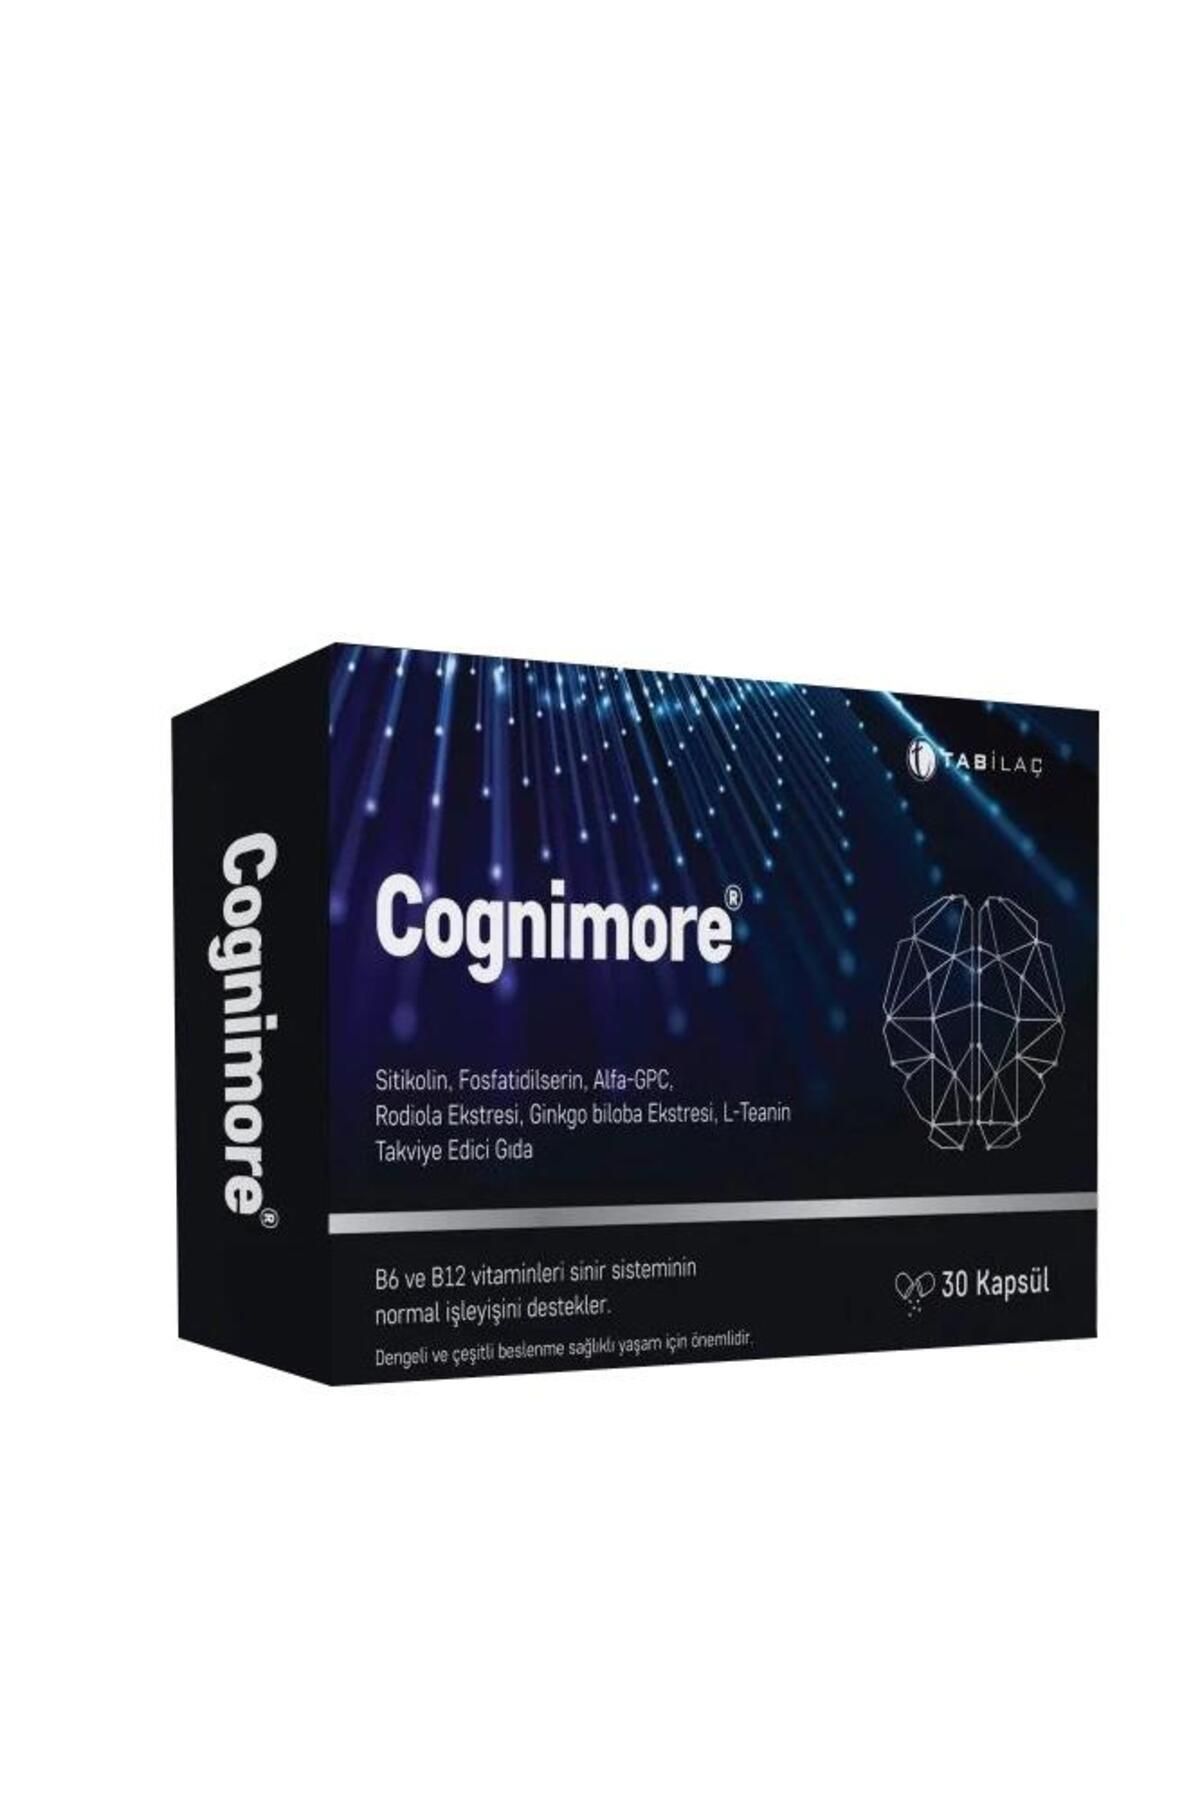 Tab İlaç Cognimore 30 Kapsül